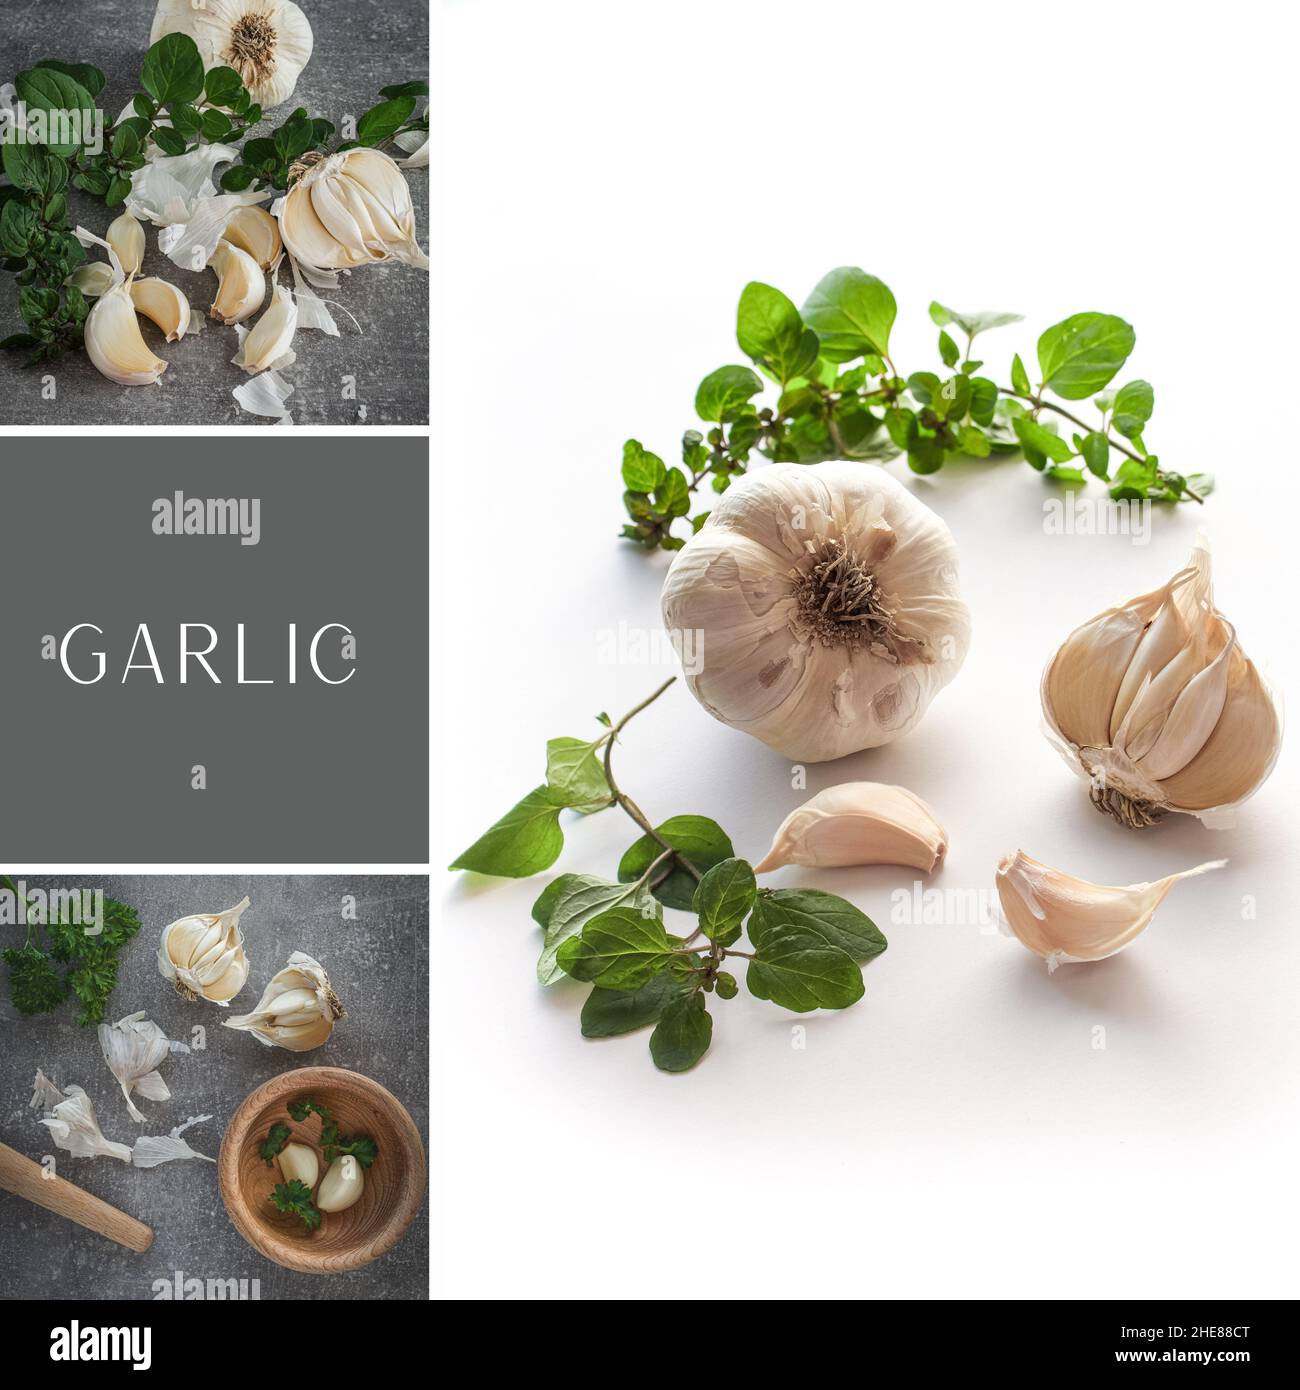 Collage di tre immagini - chiodi di garofano e bulbi - allium sativum su sfondo bianco. Mood board. Post sui social media. Foto Stock